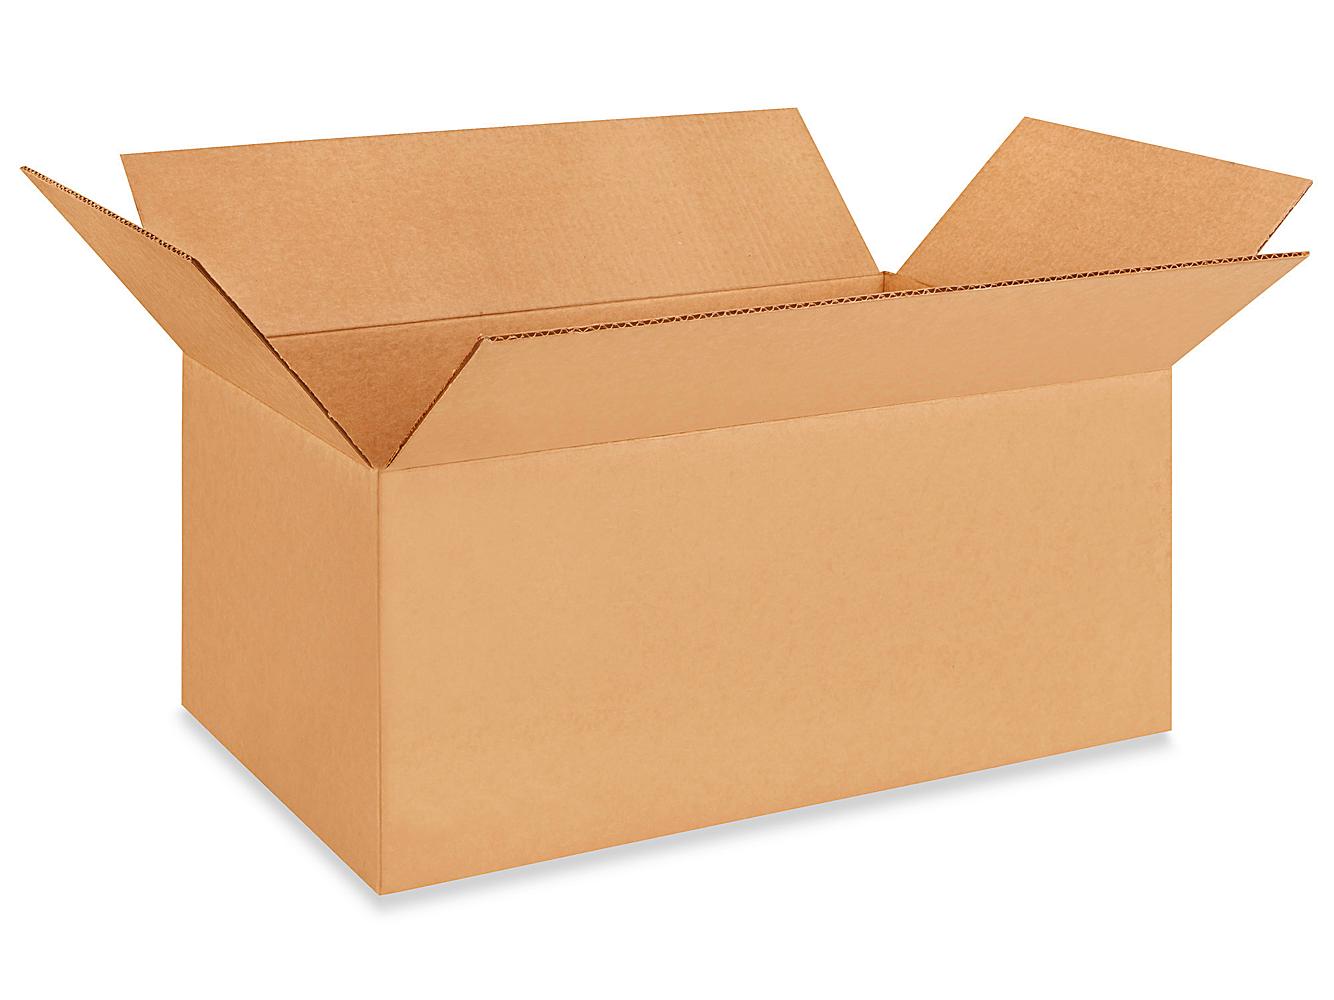 5 piezas cajas de cartón plegable del paquete compatible con la caja del paquete del paquete del paquete caja Dimensiones exteriores 15 cmx15cmx120 cm 